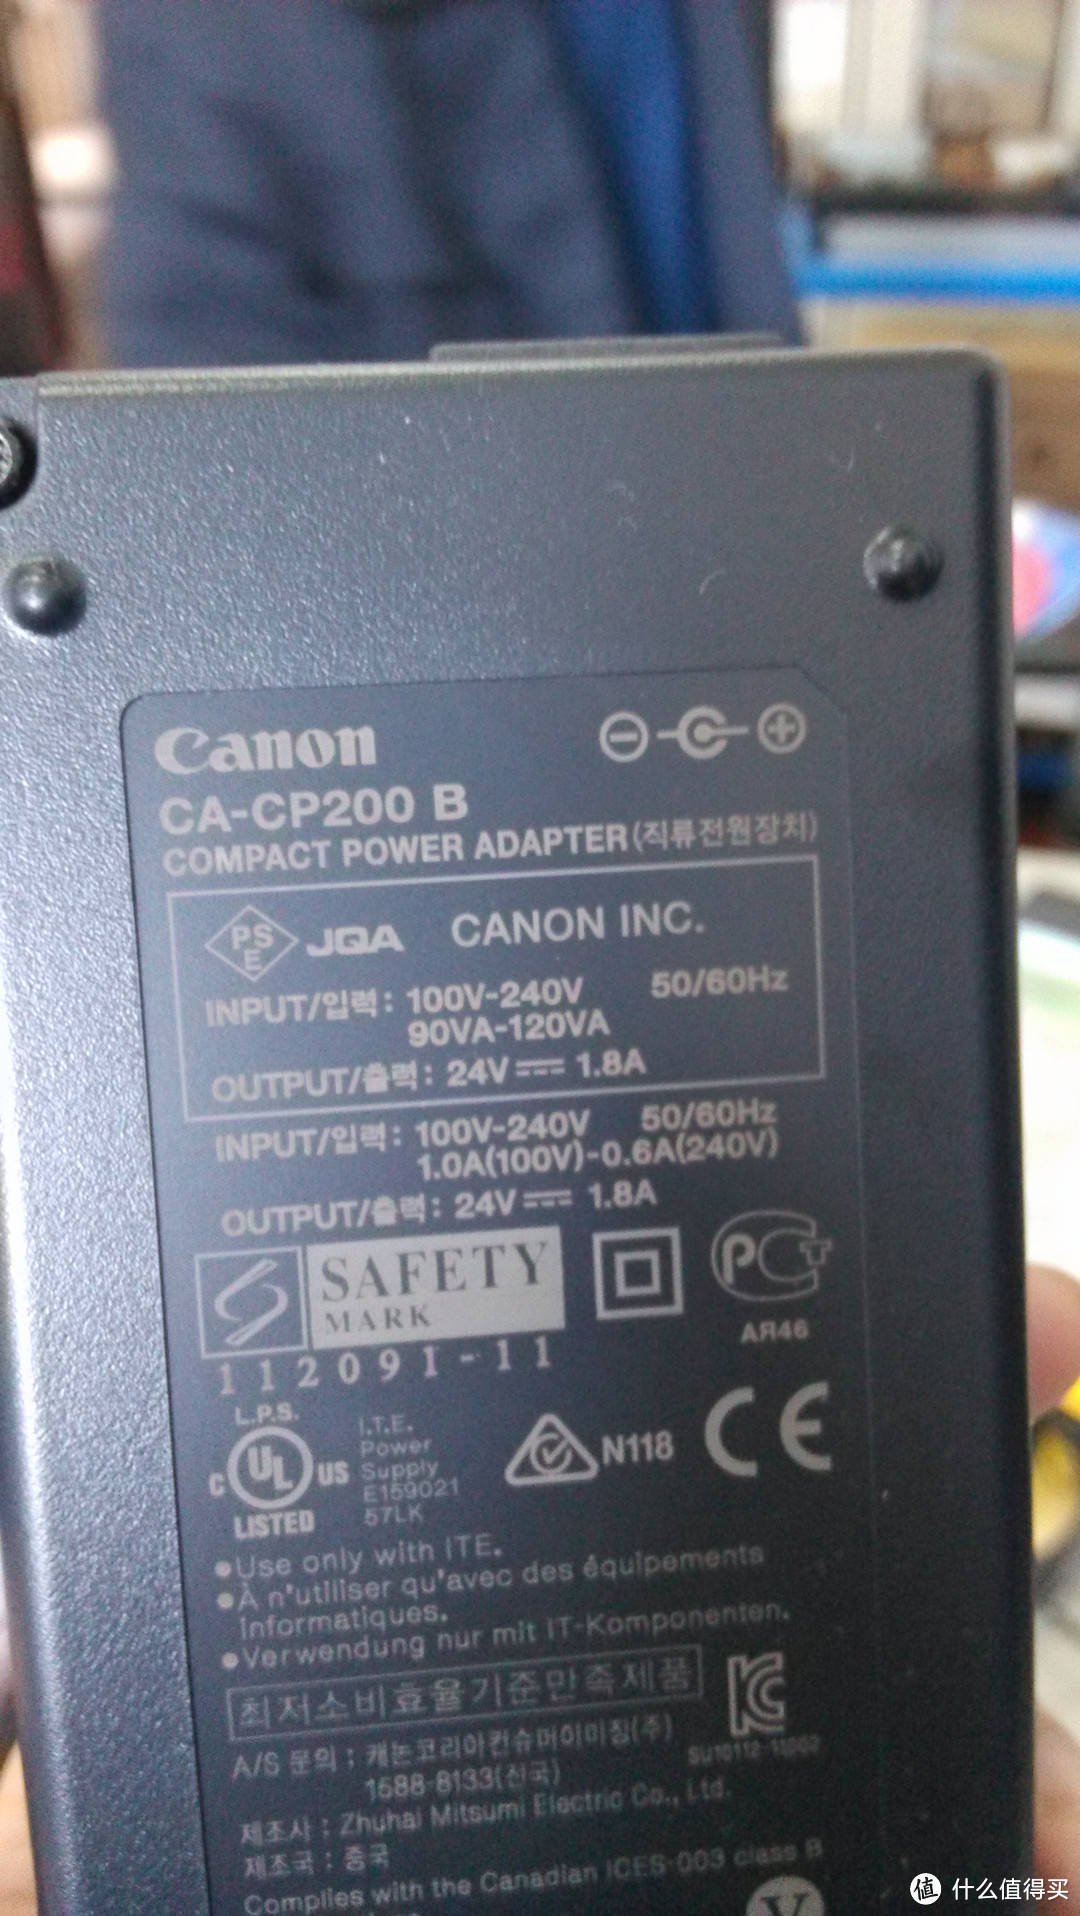 在黑五前美亚85刀直邮 Canon 佳能 SELPHY CP910 照片打印机 开箱及使用经验